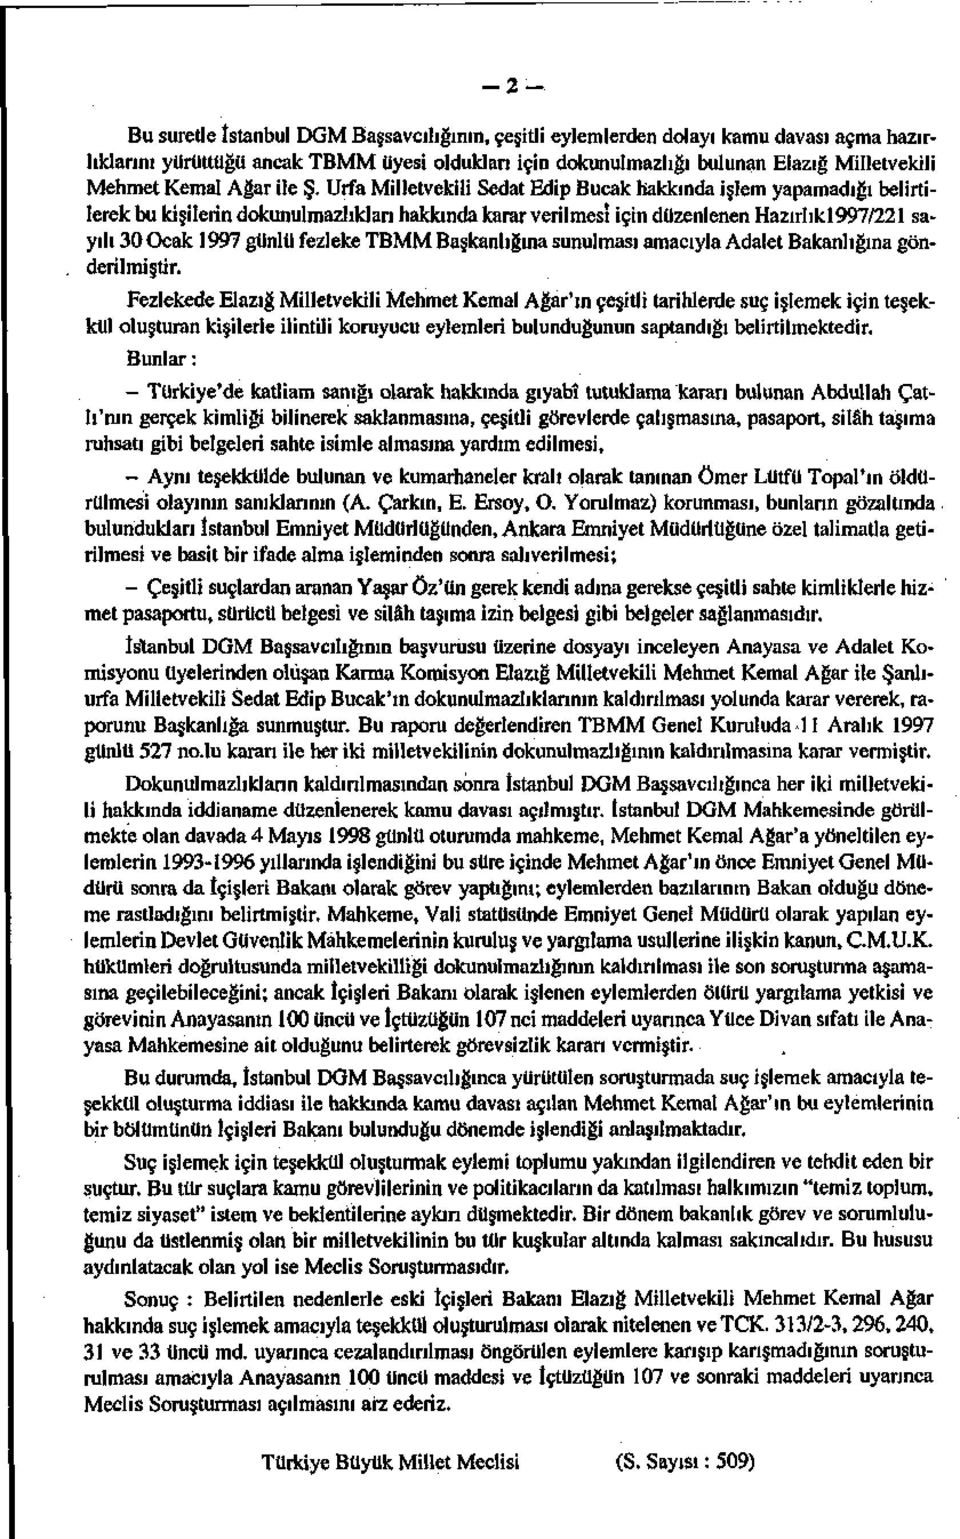 Urfa Milletvekili Sedat Edip Bucak hakkında işlem yapamadığı belirtilerek bu kişilerin dokunulmazlıkları hakkında karar verilmesi için düzenlenen Hazırlıkl997/221 sayılı 30 Ocak 1997 günlü fezleke